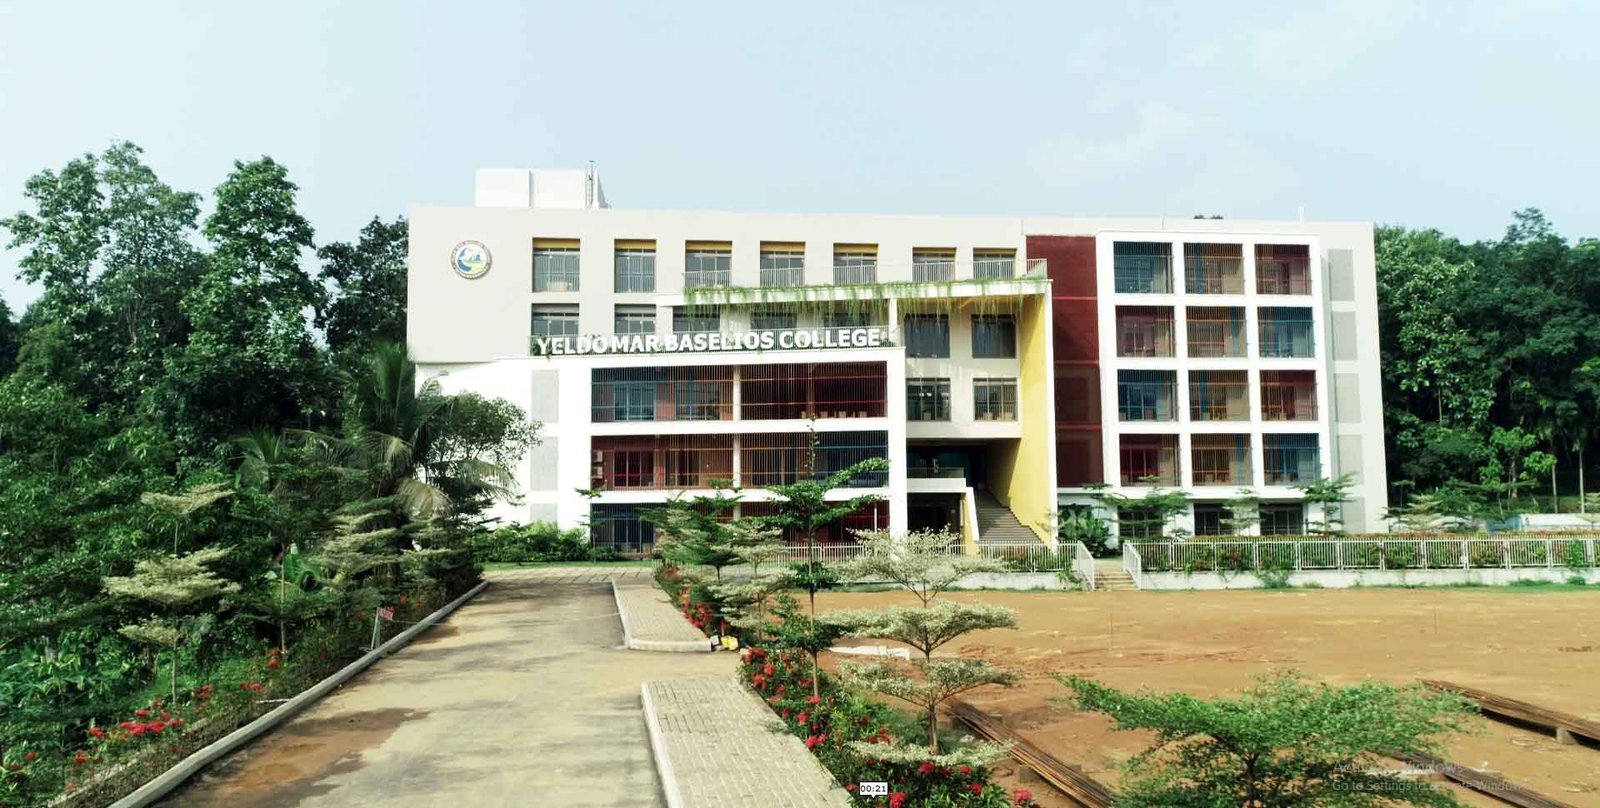 Yeldo Mar Baselios College Kothamangalam, Ernakulam - YMBC.